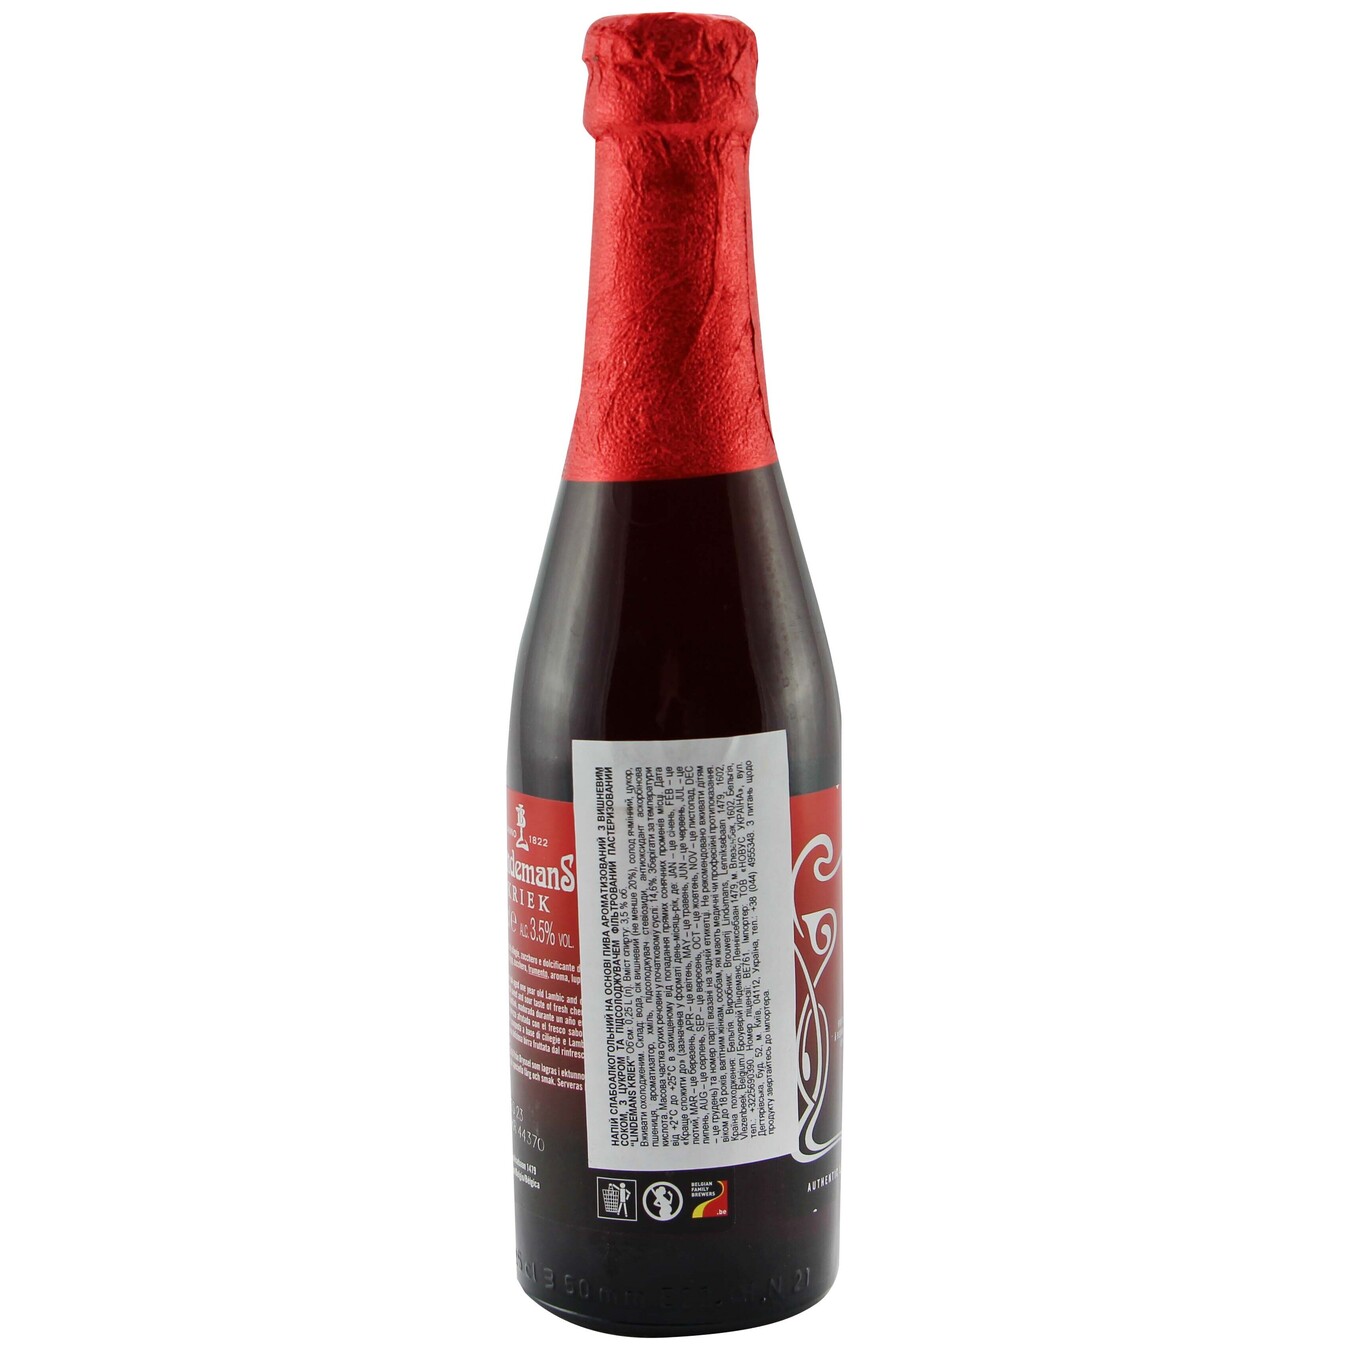 Lindemans Kriek red beer 3,5% 0,25l 2